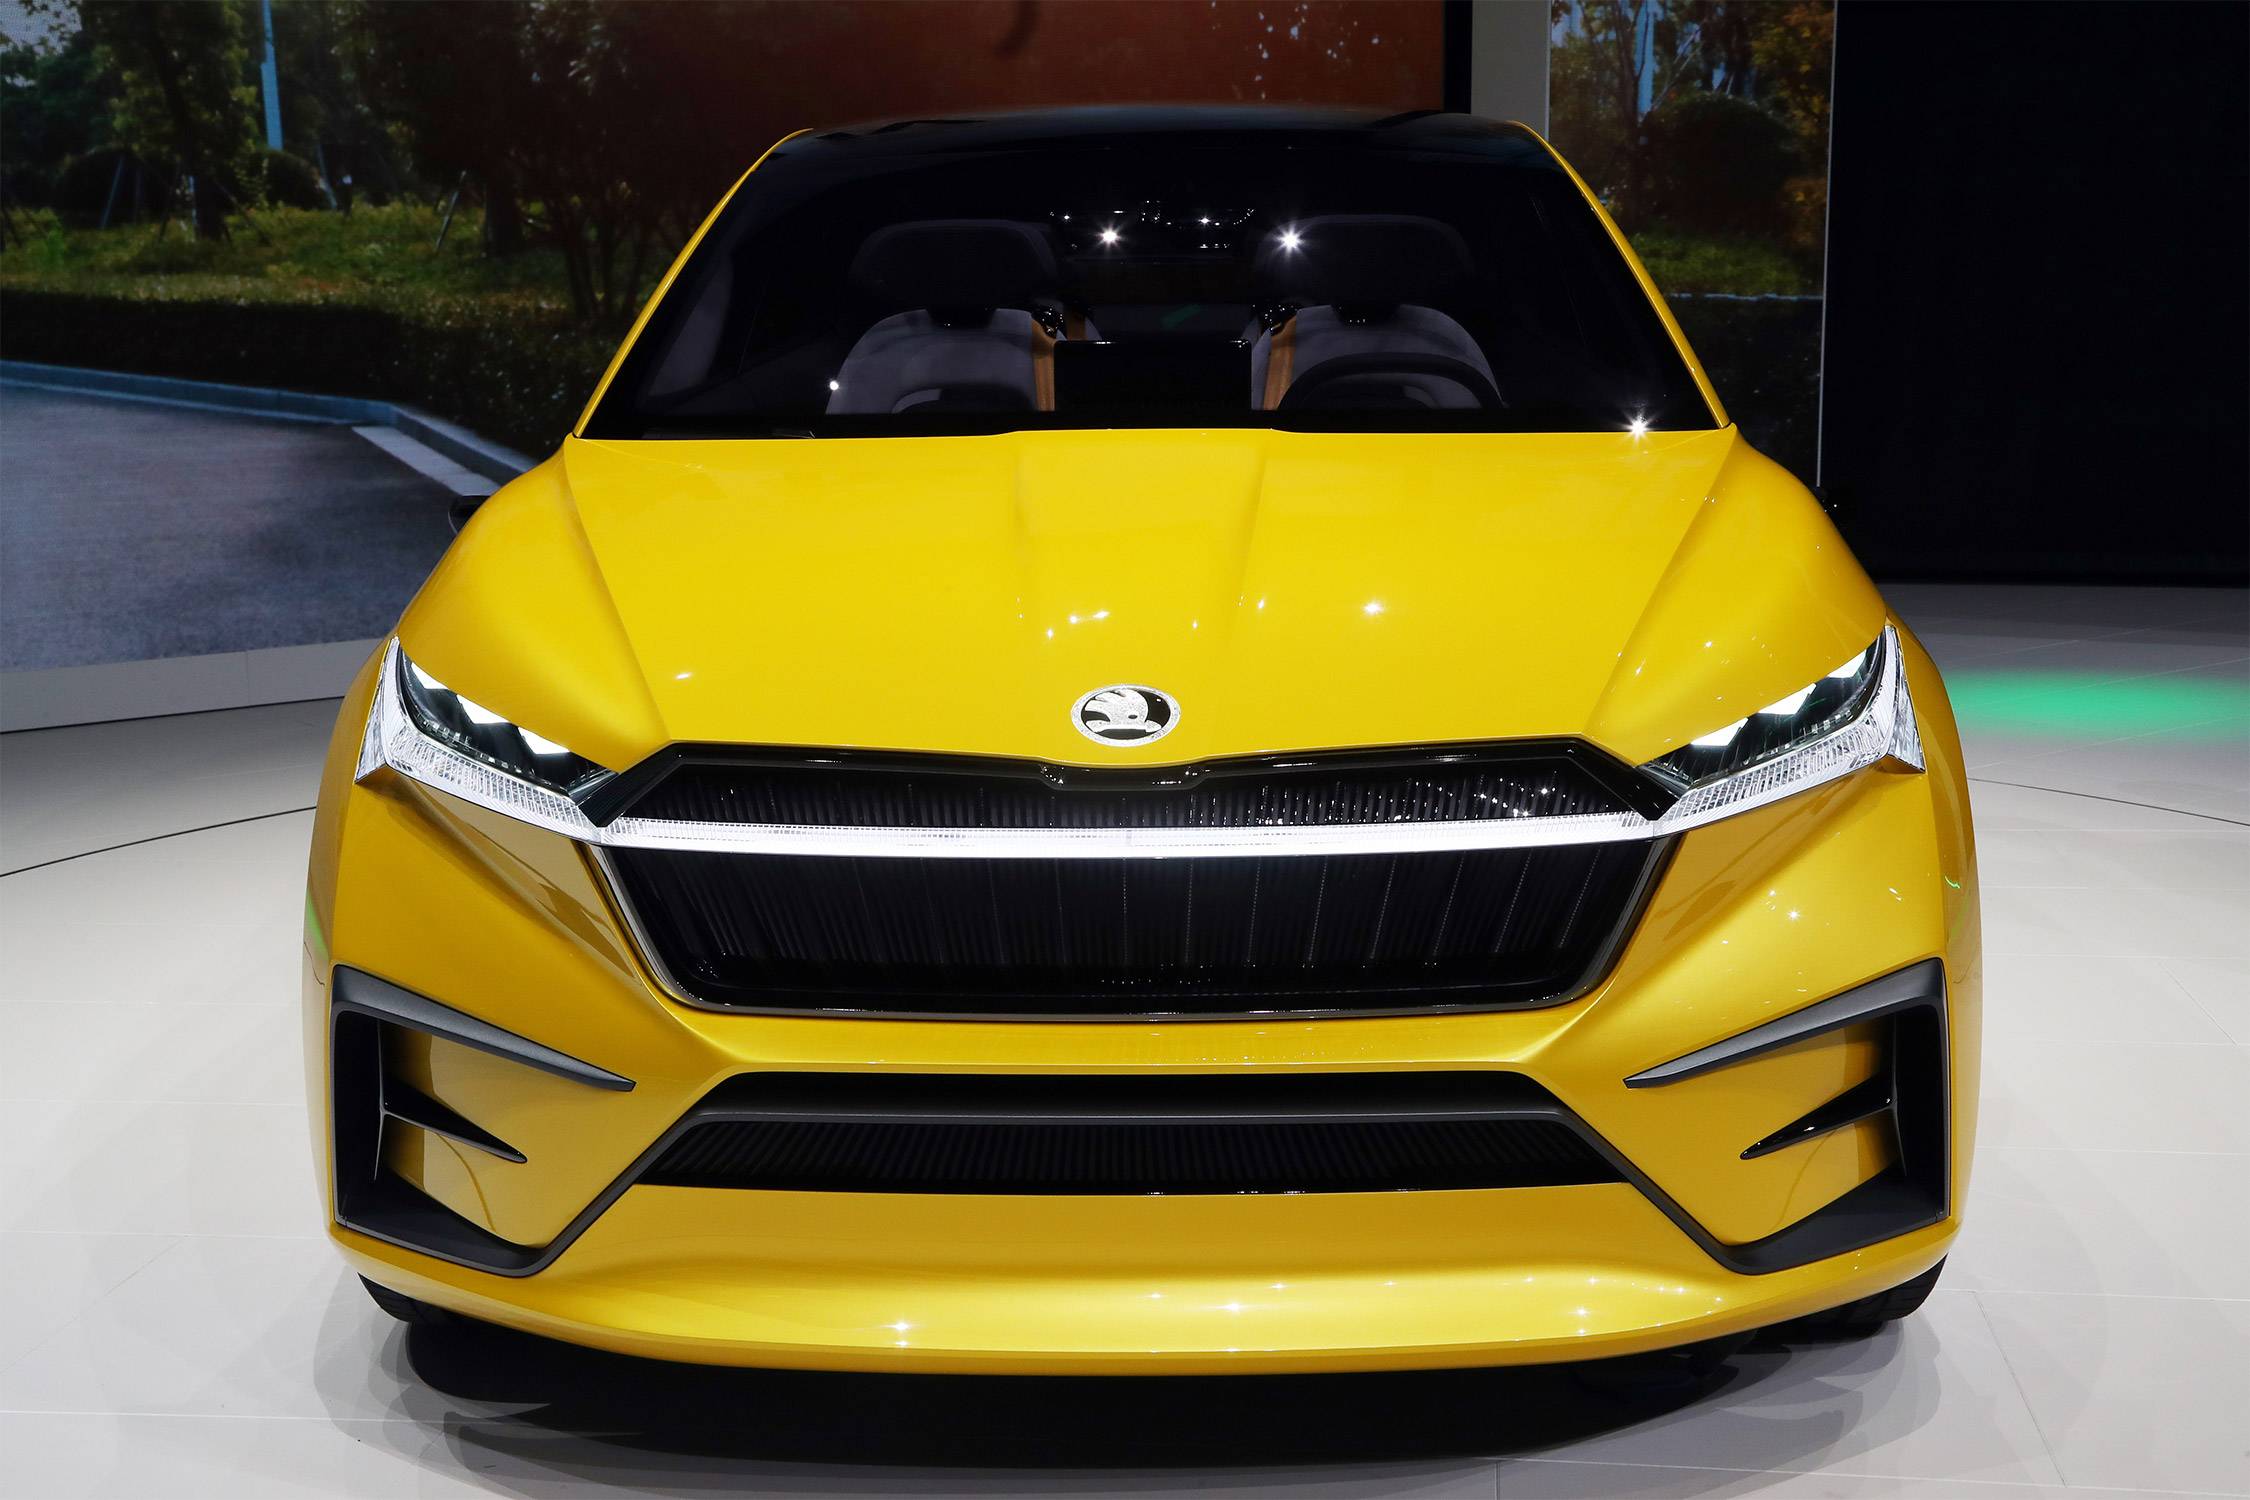 photo SKODA VISION iV Concept concept-car 2019 - Motorlegend.com